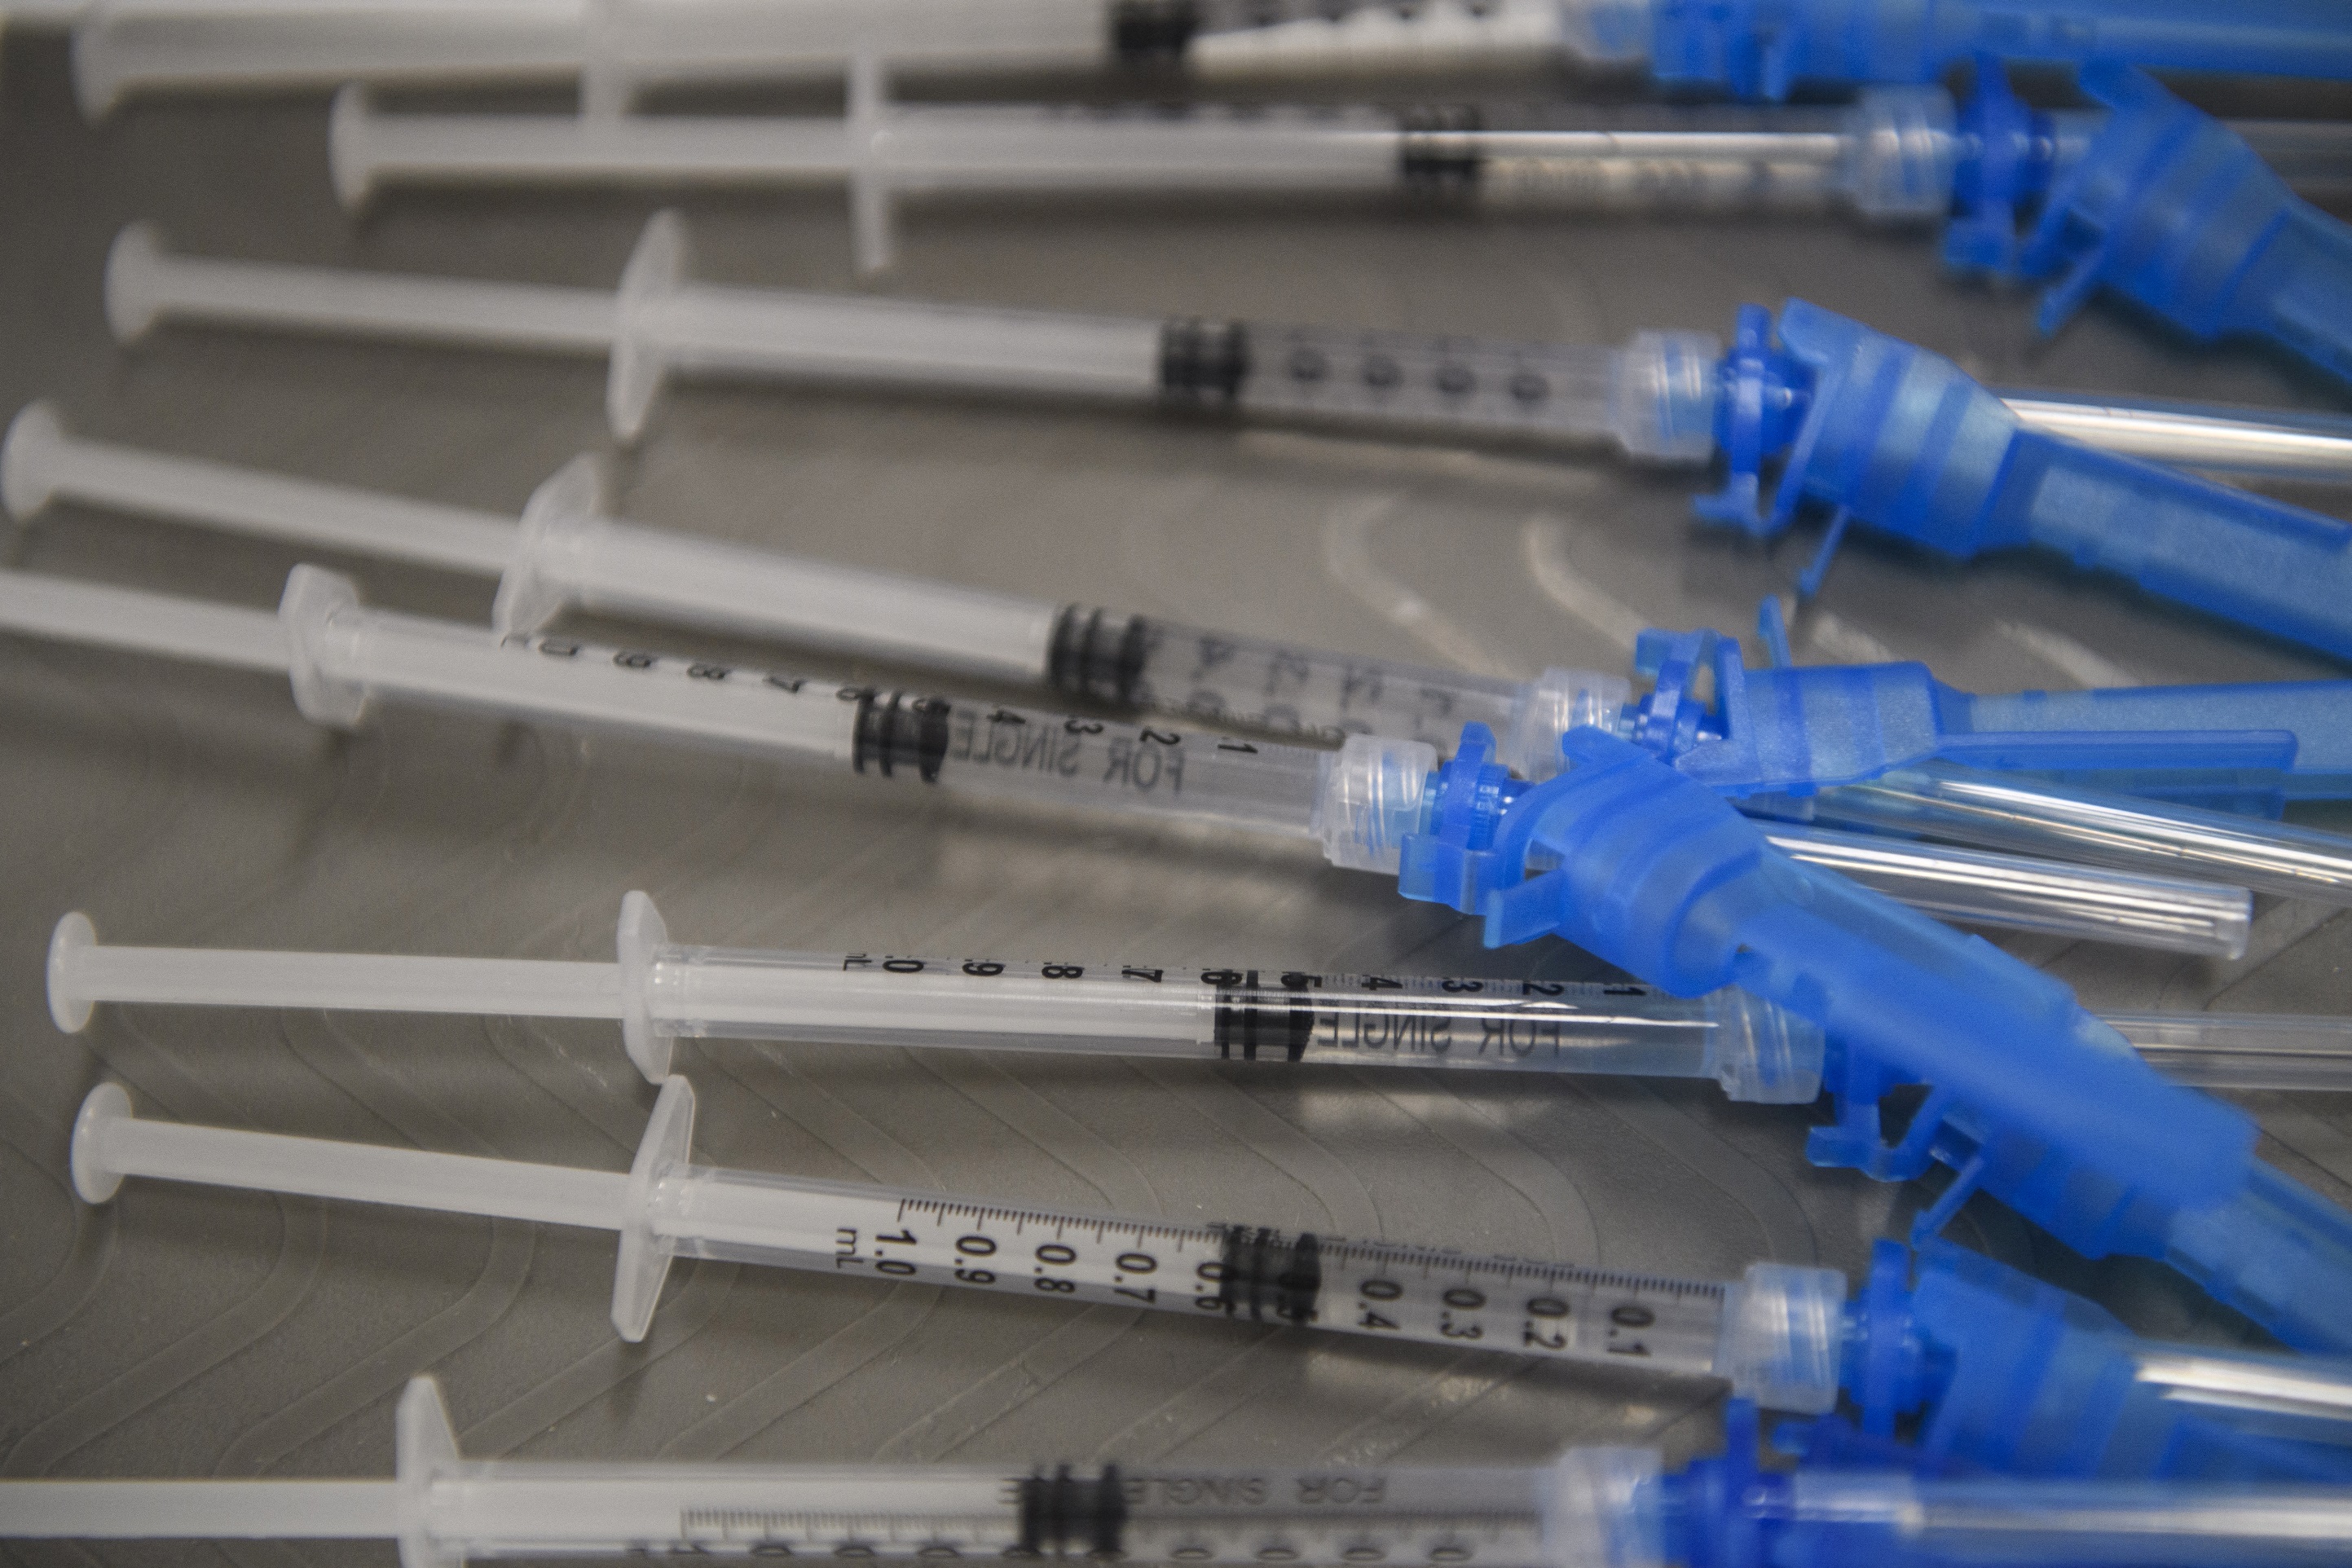 Le vaccin Johnson &amp; Johnson (Ad26.COV2.S) a démontré une efficacité de 85 % contre les hospitalisations liées à la Covid-19. © Patrick T. Fallon, AFP